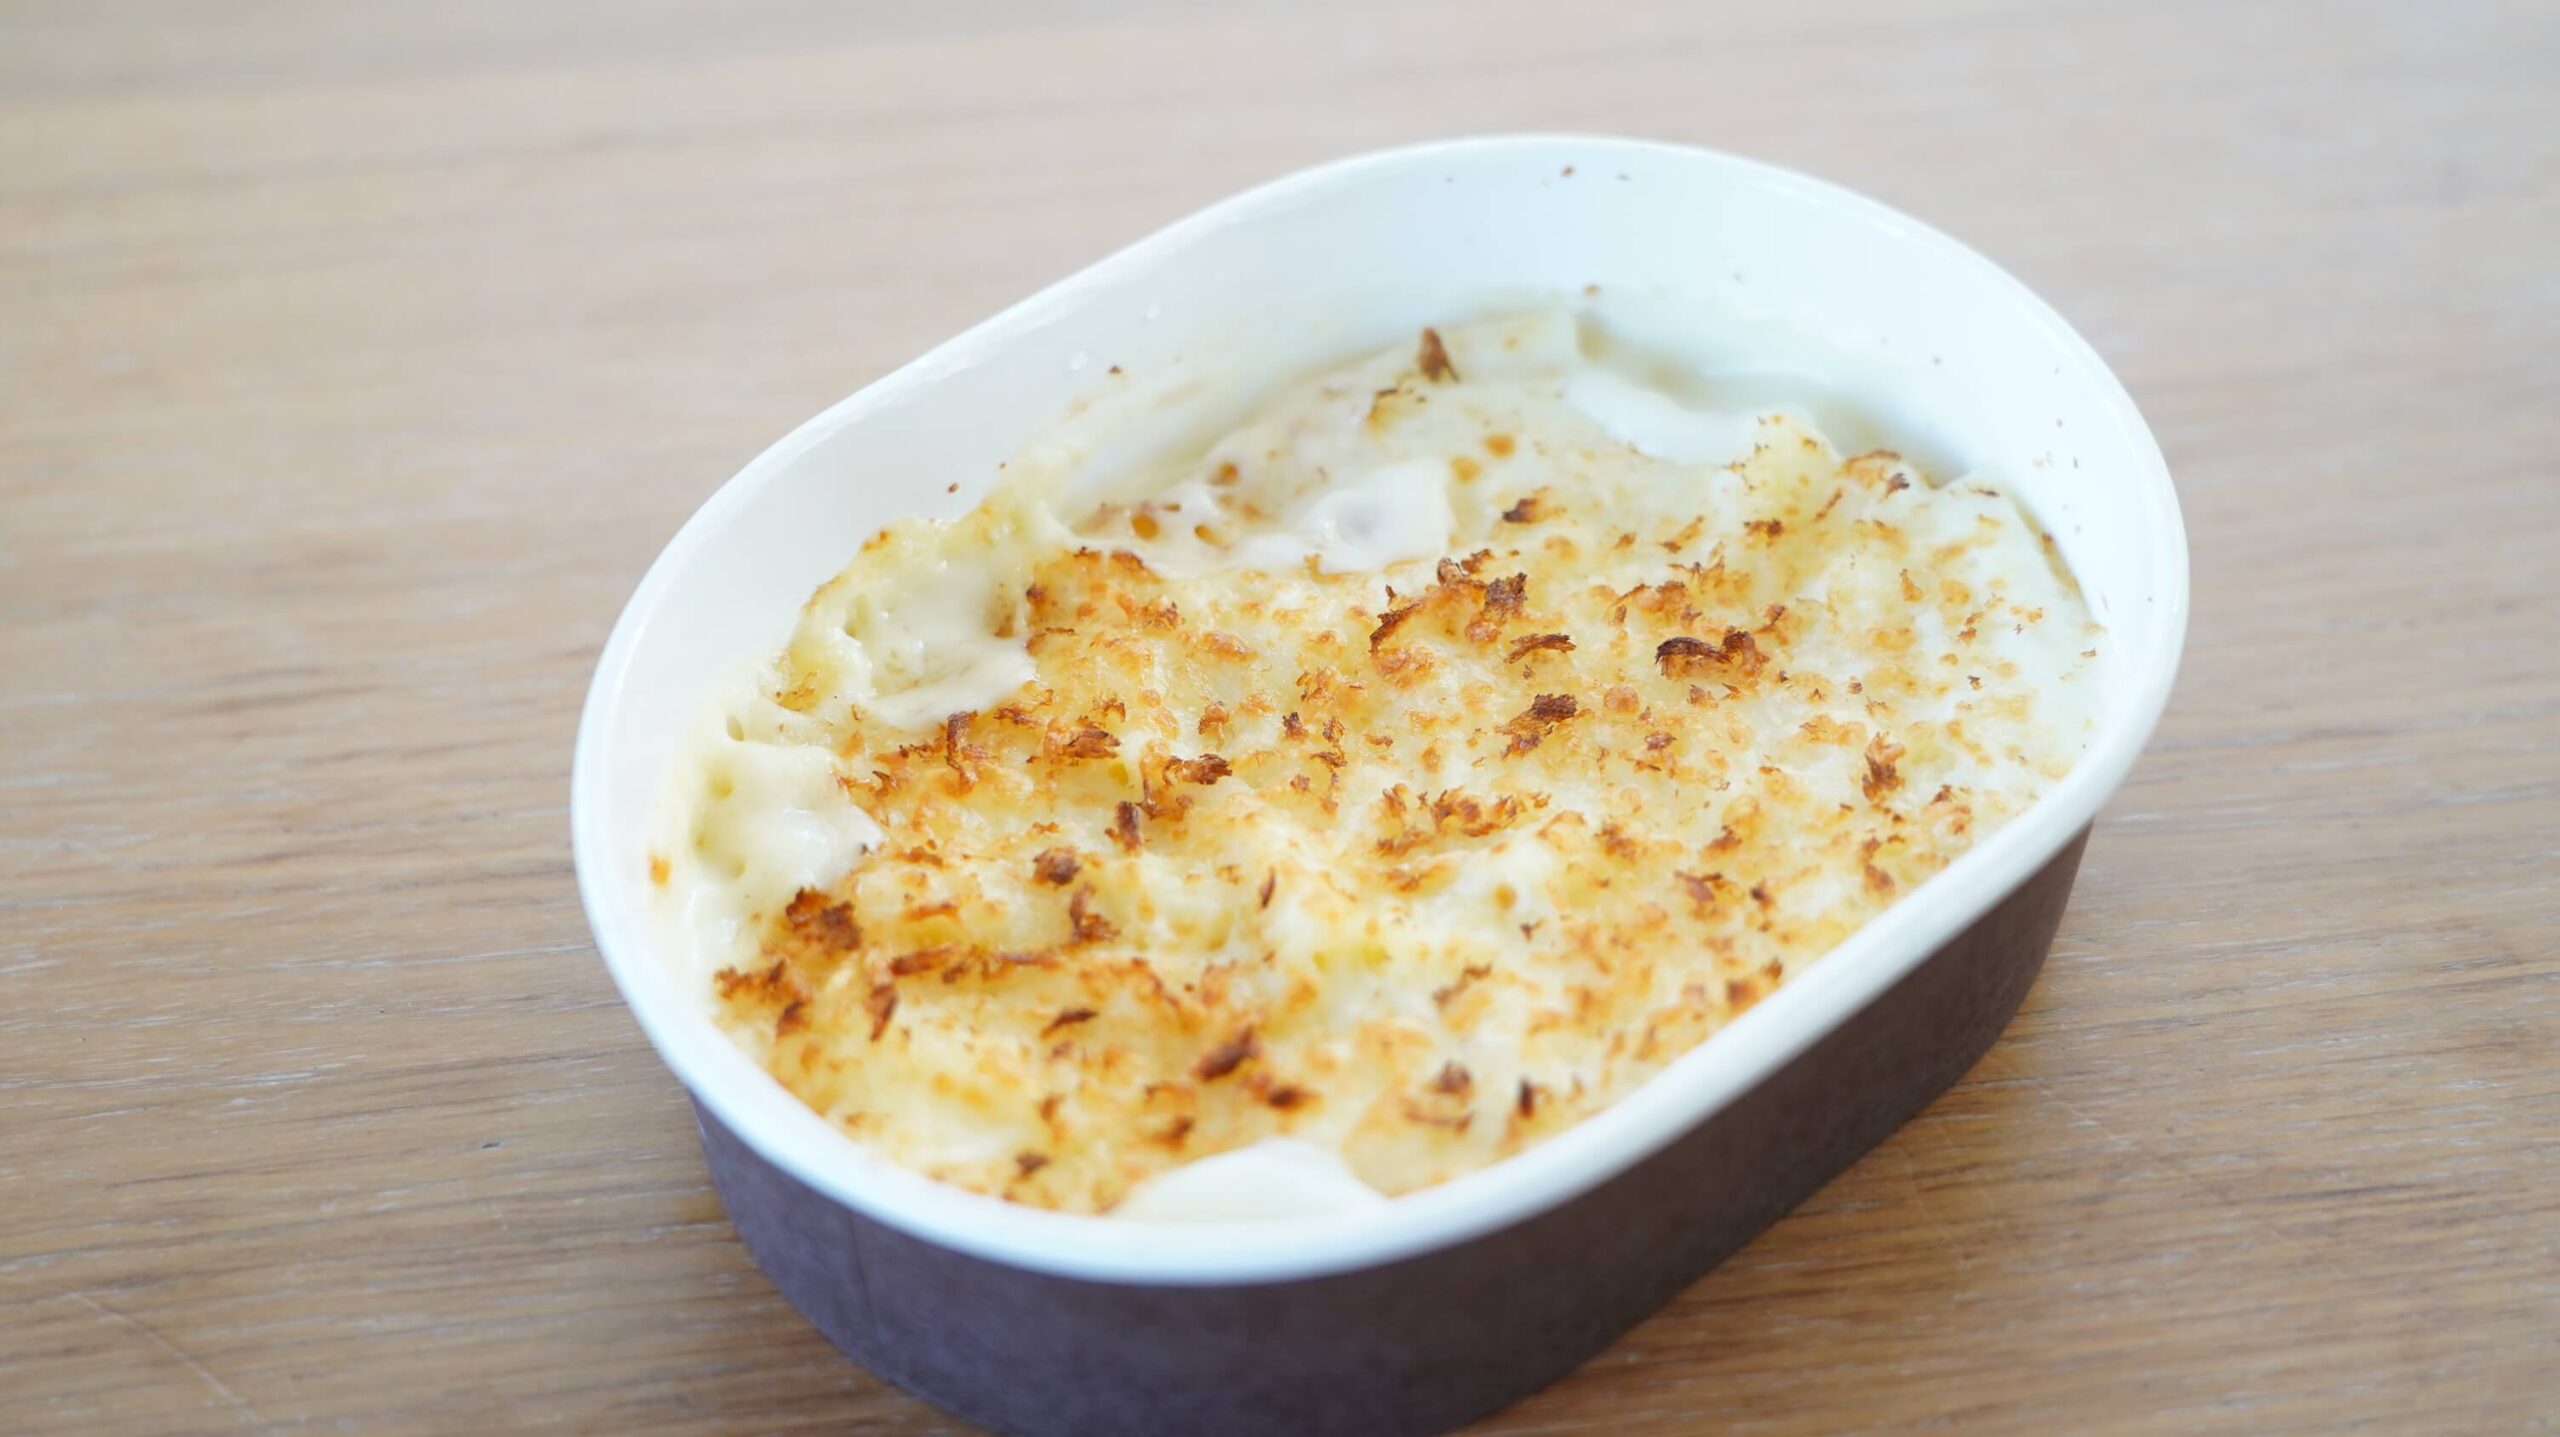 セブンイレブンの冷凍食品「チーズの香り広がる・マカロニグラタン」の中身の写真